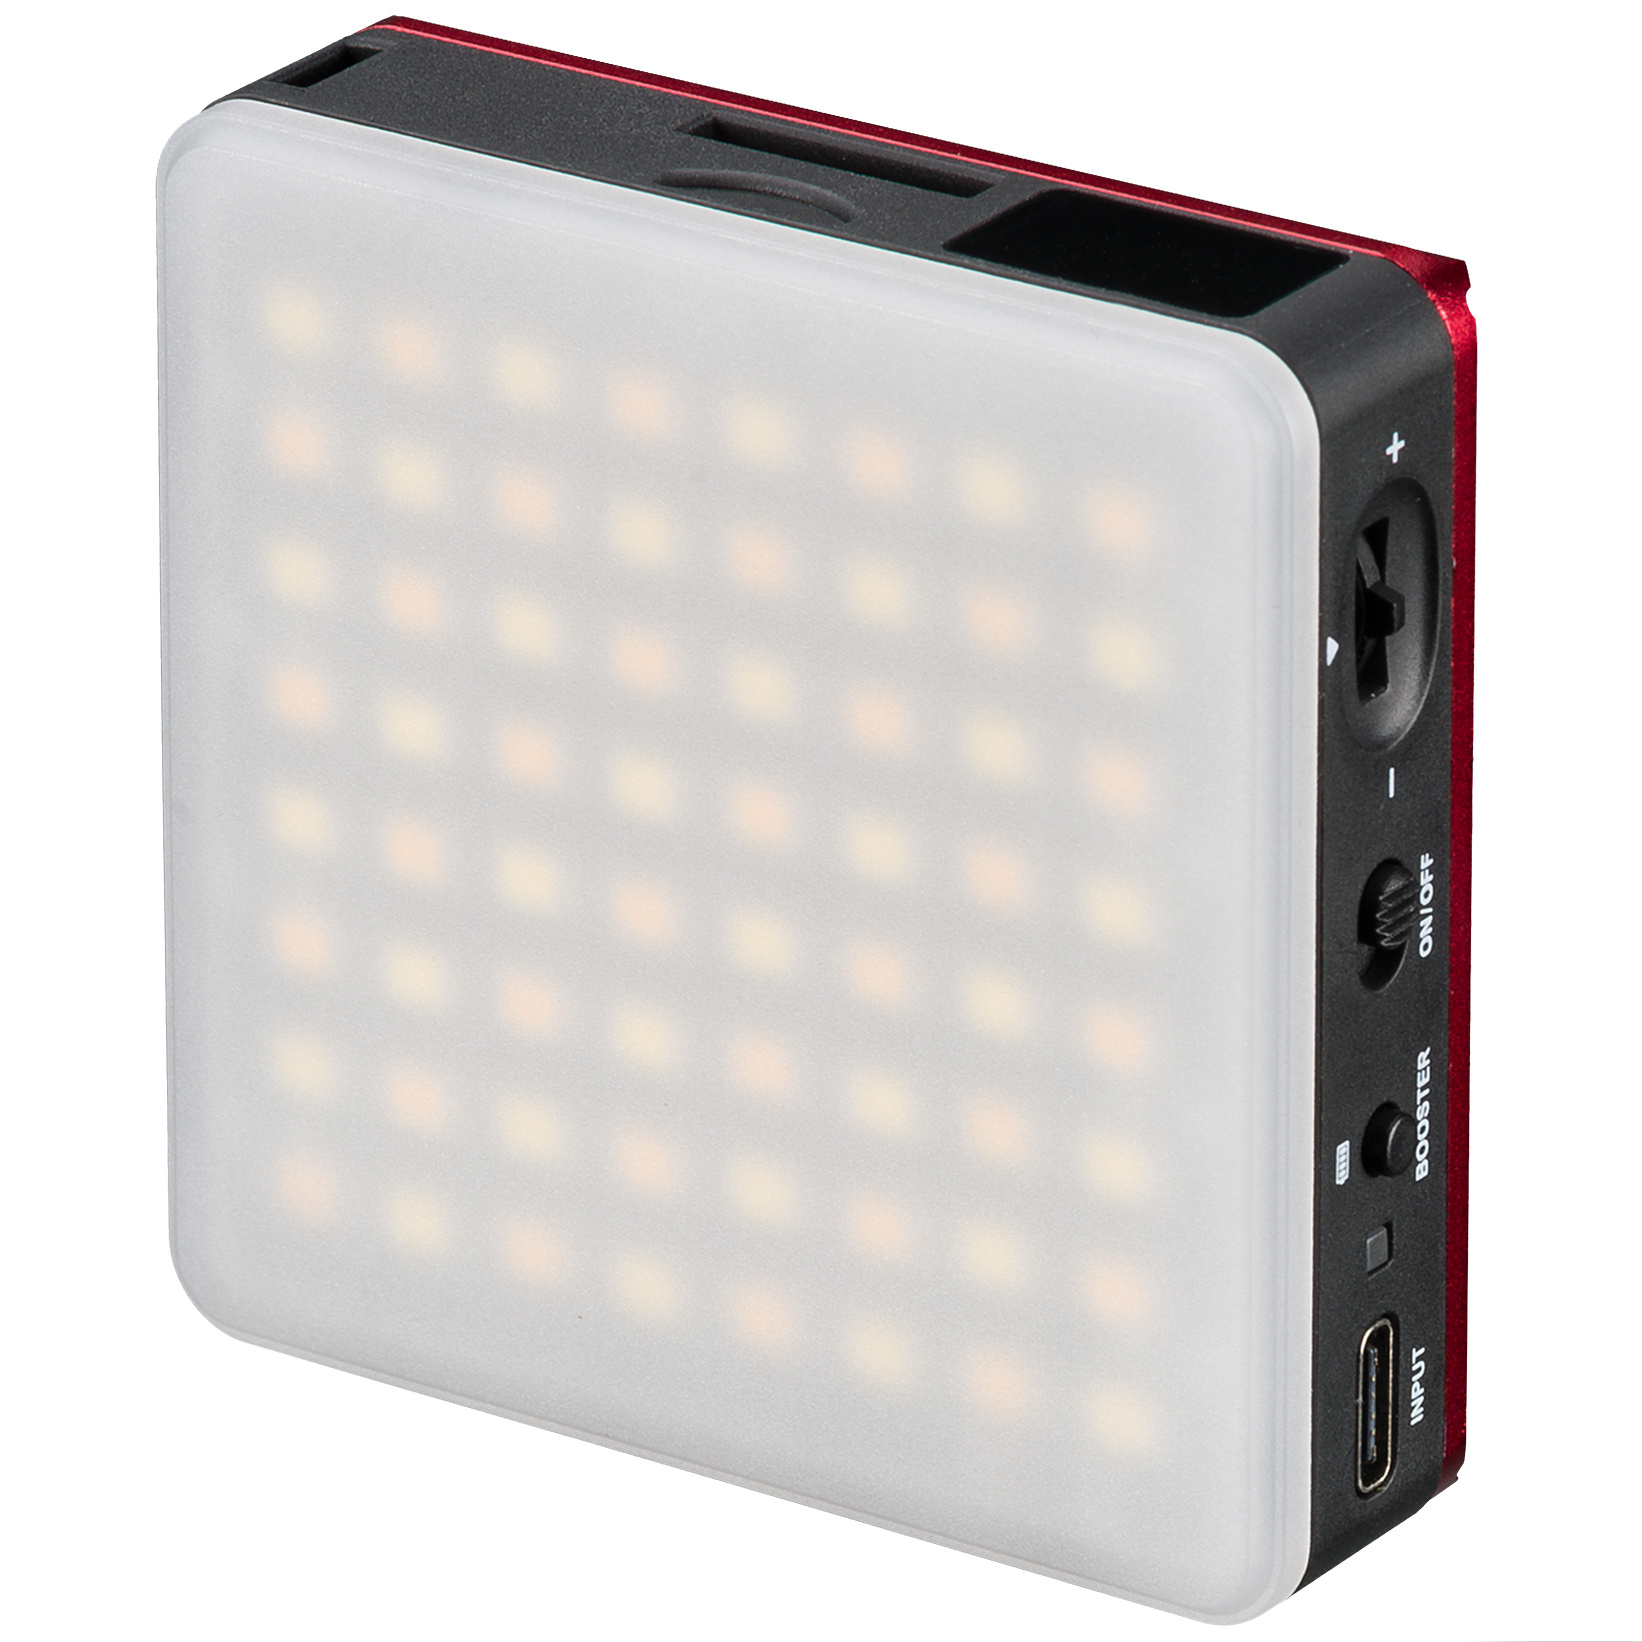 BRESSER Pocket LED 5 W Luz continua bicolor para Uso móvil y Fotografía en Smartphone